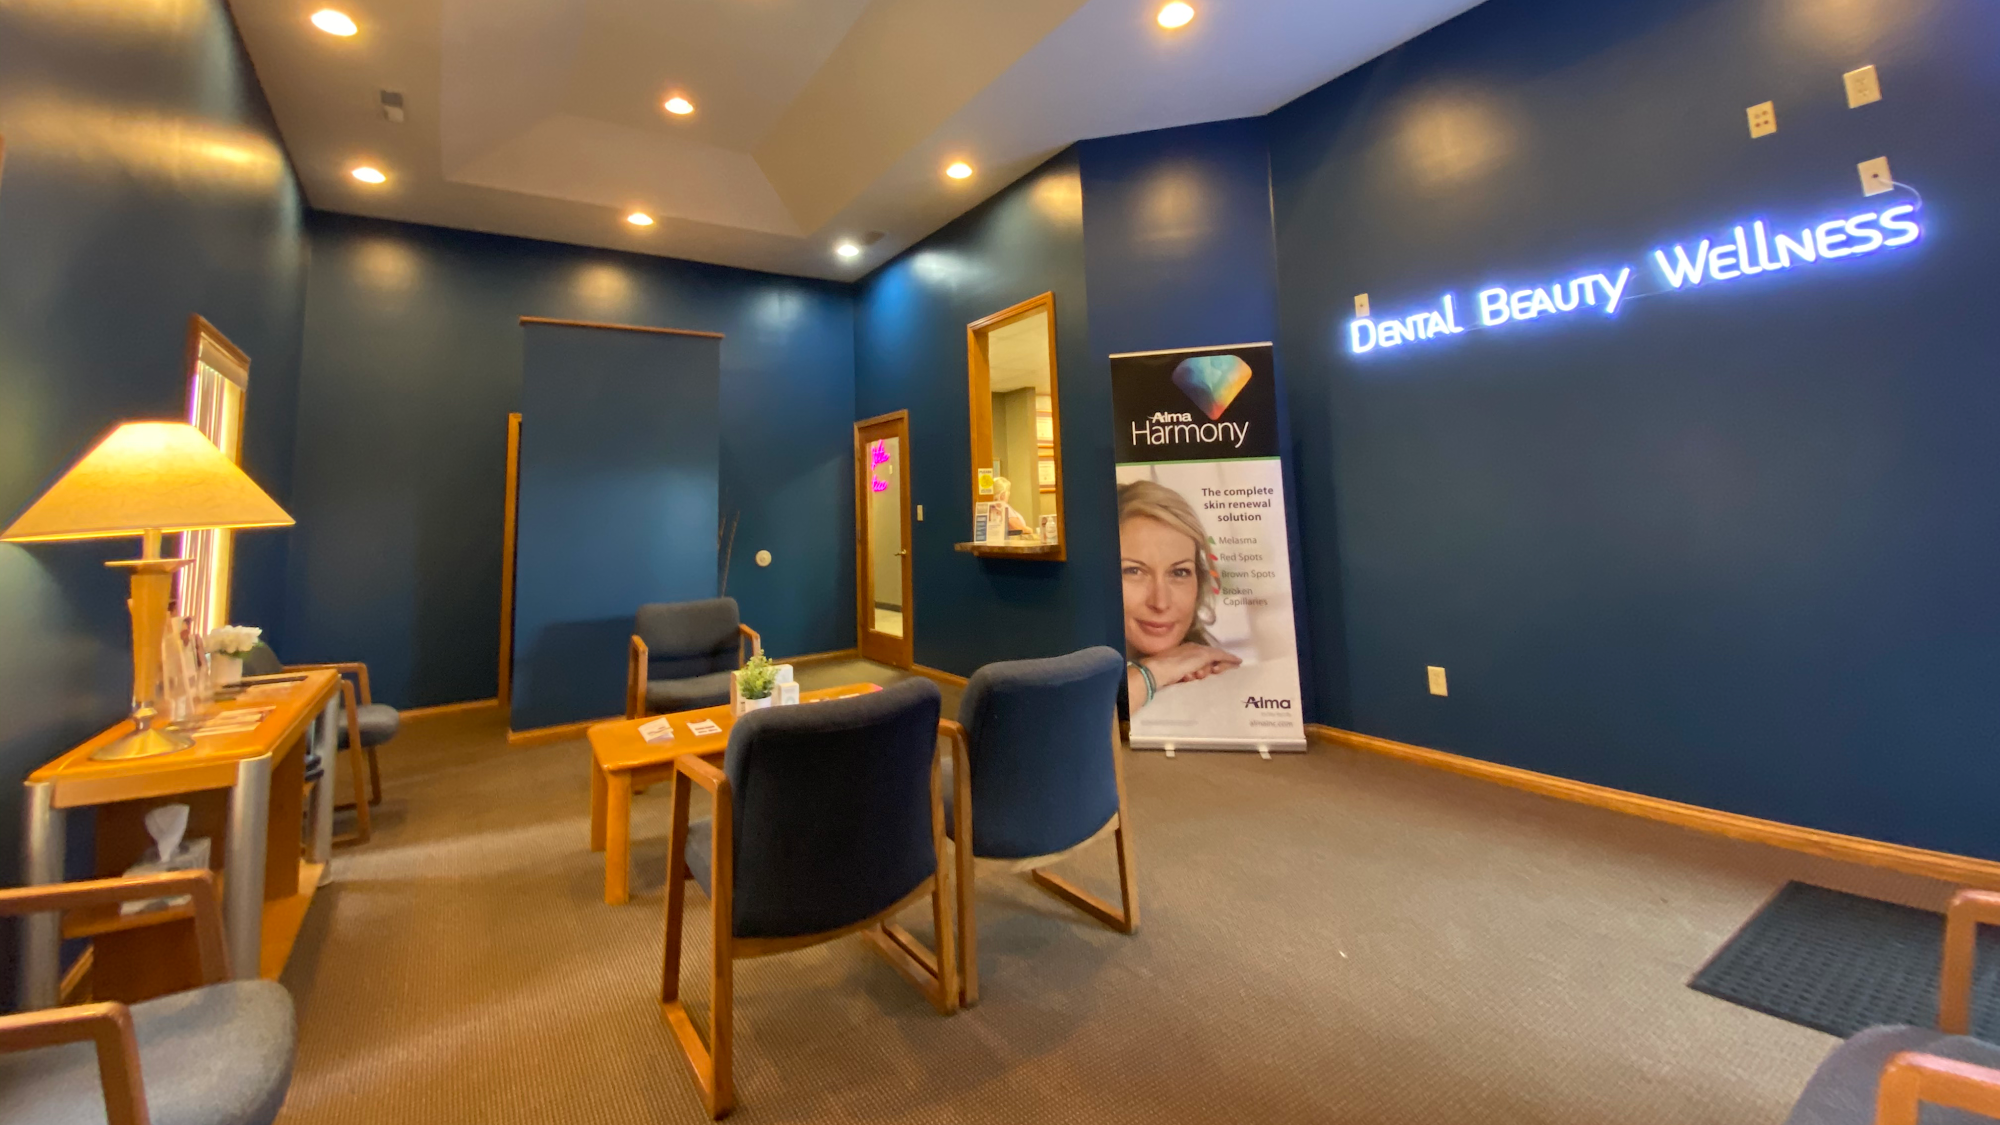 Dental Beauty Wellness Center